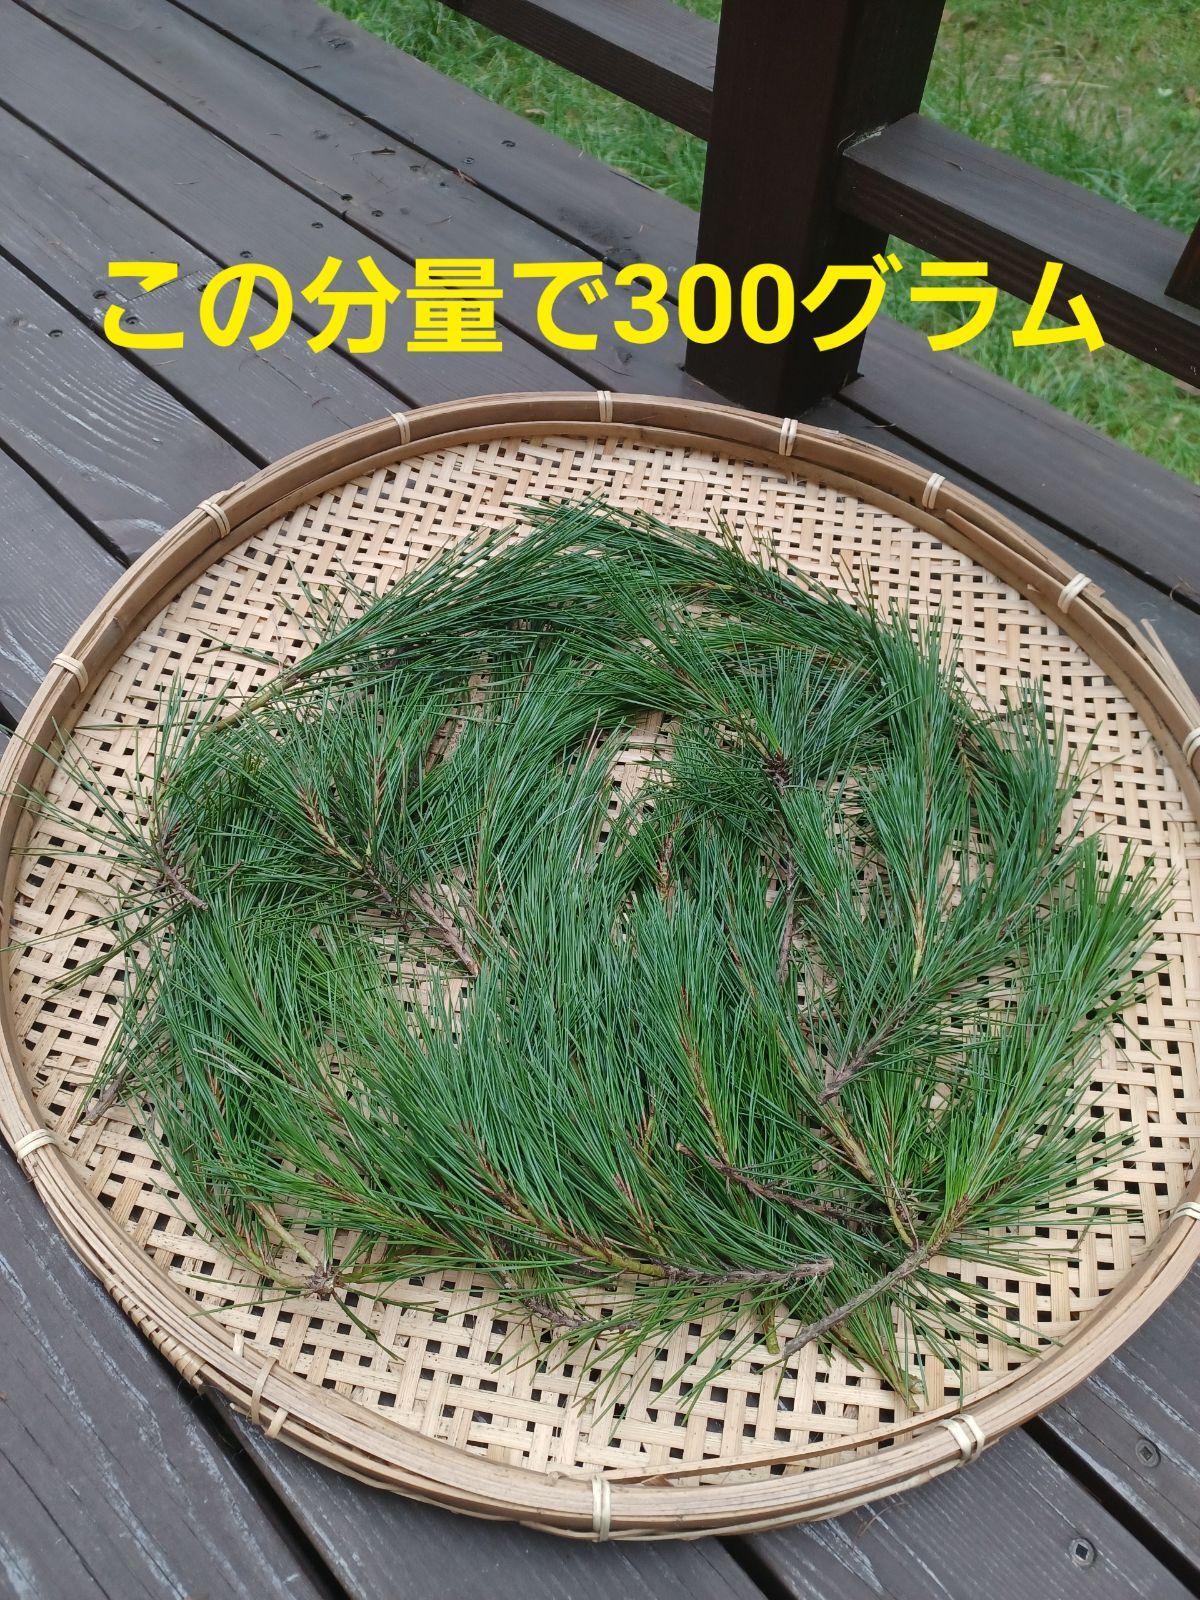 採れたて新鮮♪︎軽井沢産 天然無農薬 松葉 300g超-1